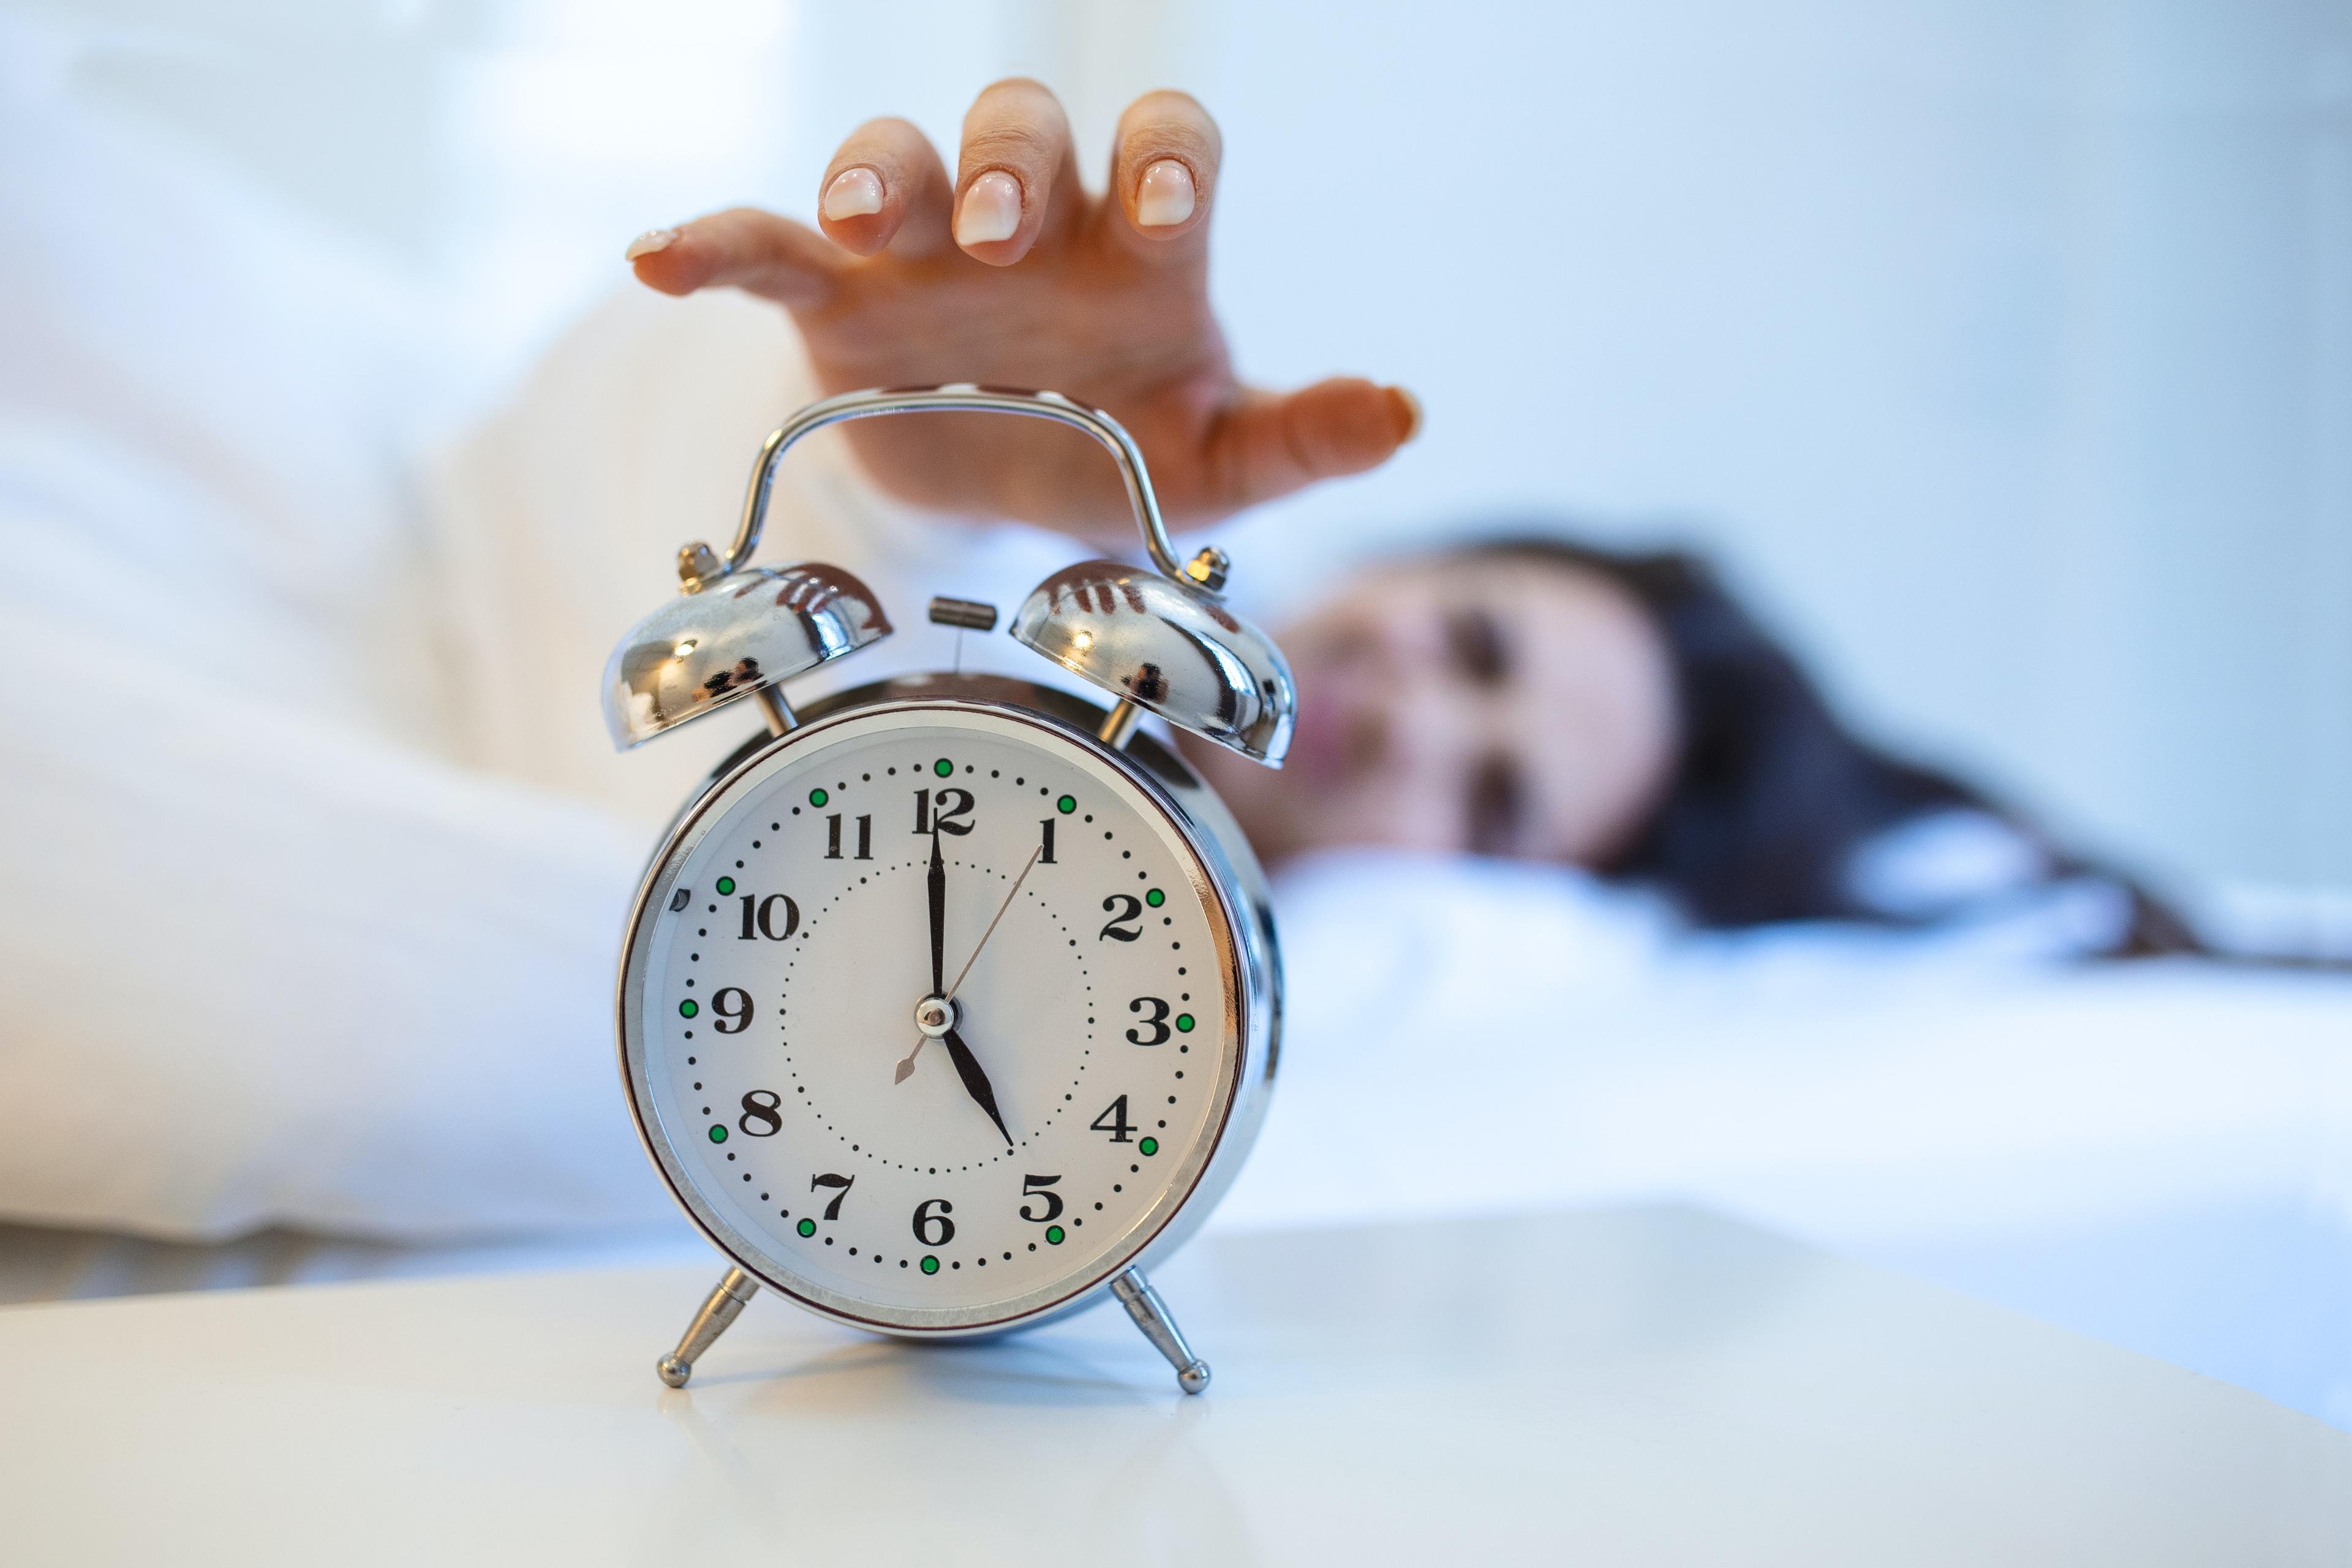 Bezsenność - czym jest insomnia? Przyczyny, objawy i leczenie. Bezsenność – objawy, przyczyny i leczenie insomnii. Jakie są metody leczenia bezsenności? Bezsenność (insomnia) – jakie są sposoby na problemy z zaśnięciem? 